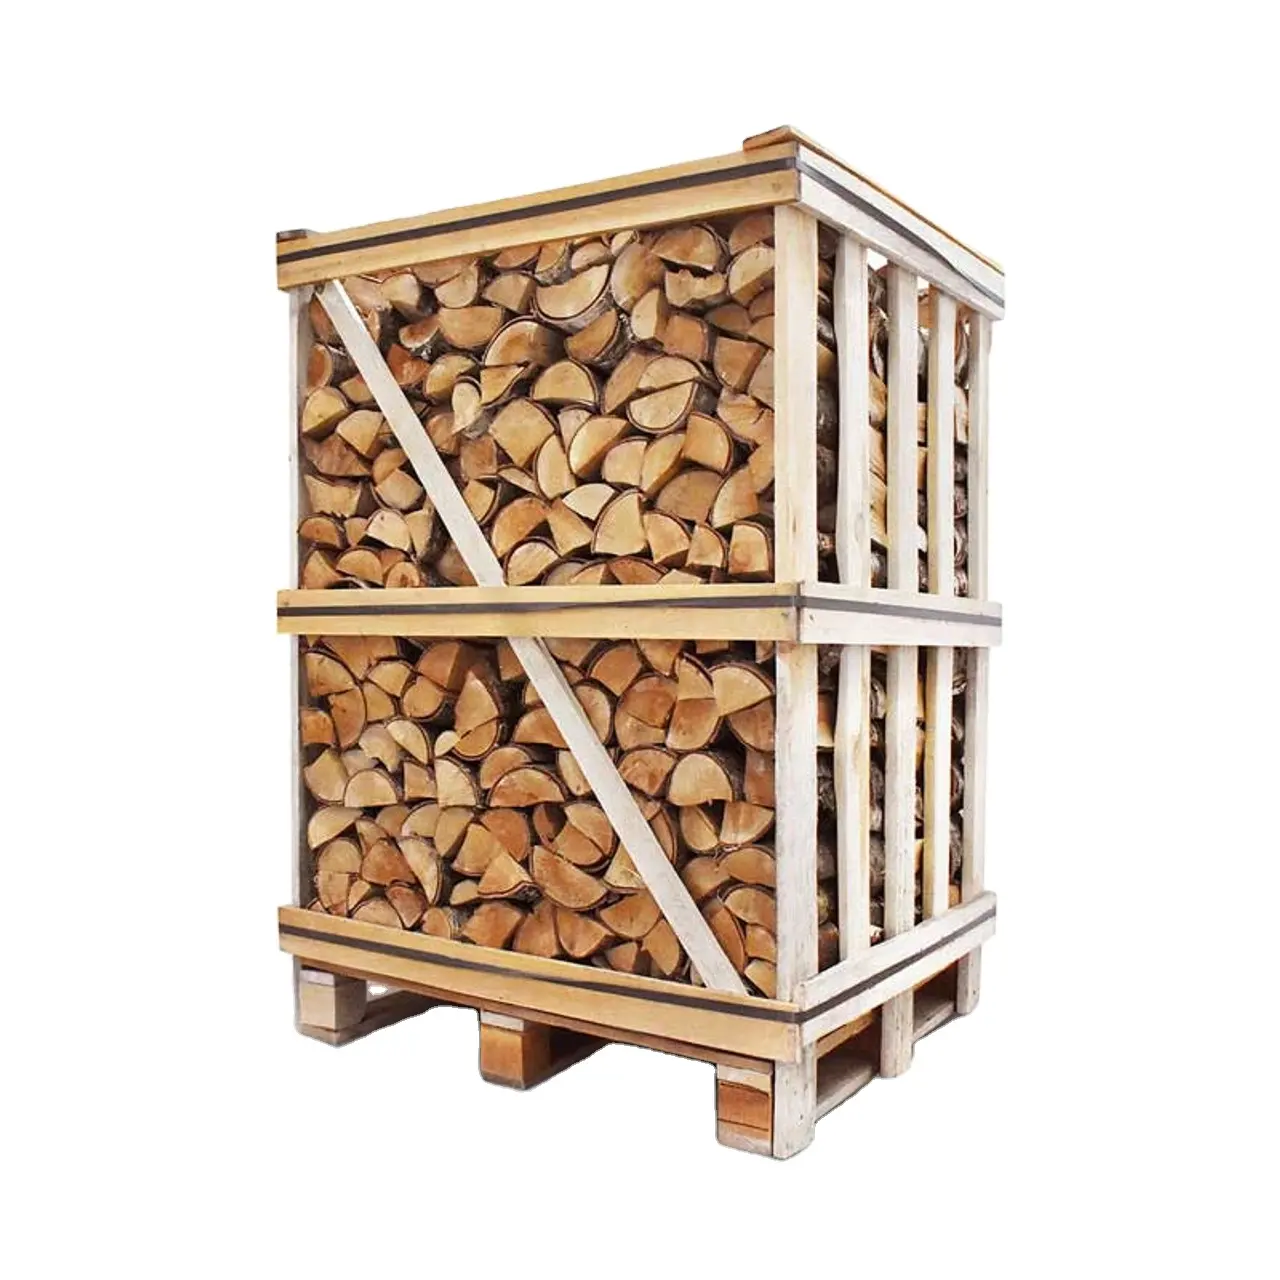 Bois de chauffage de chêne de hêtre sur des palettes/bois de chauffage sec à bas prix + fonction + spécification